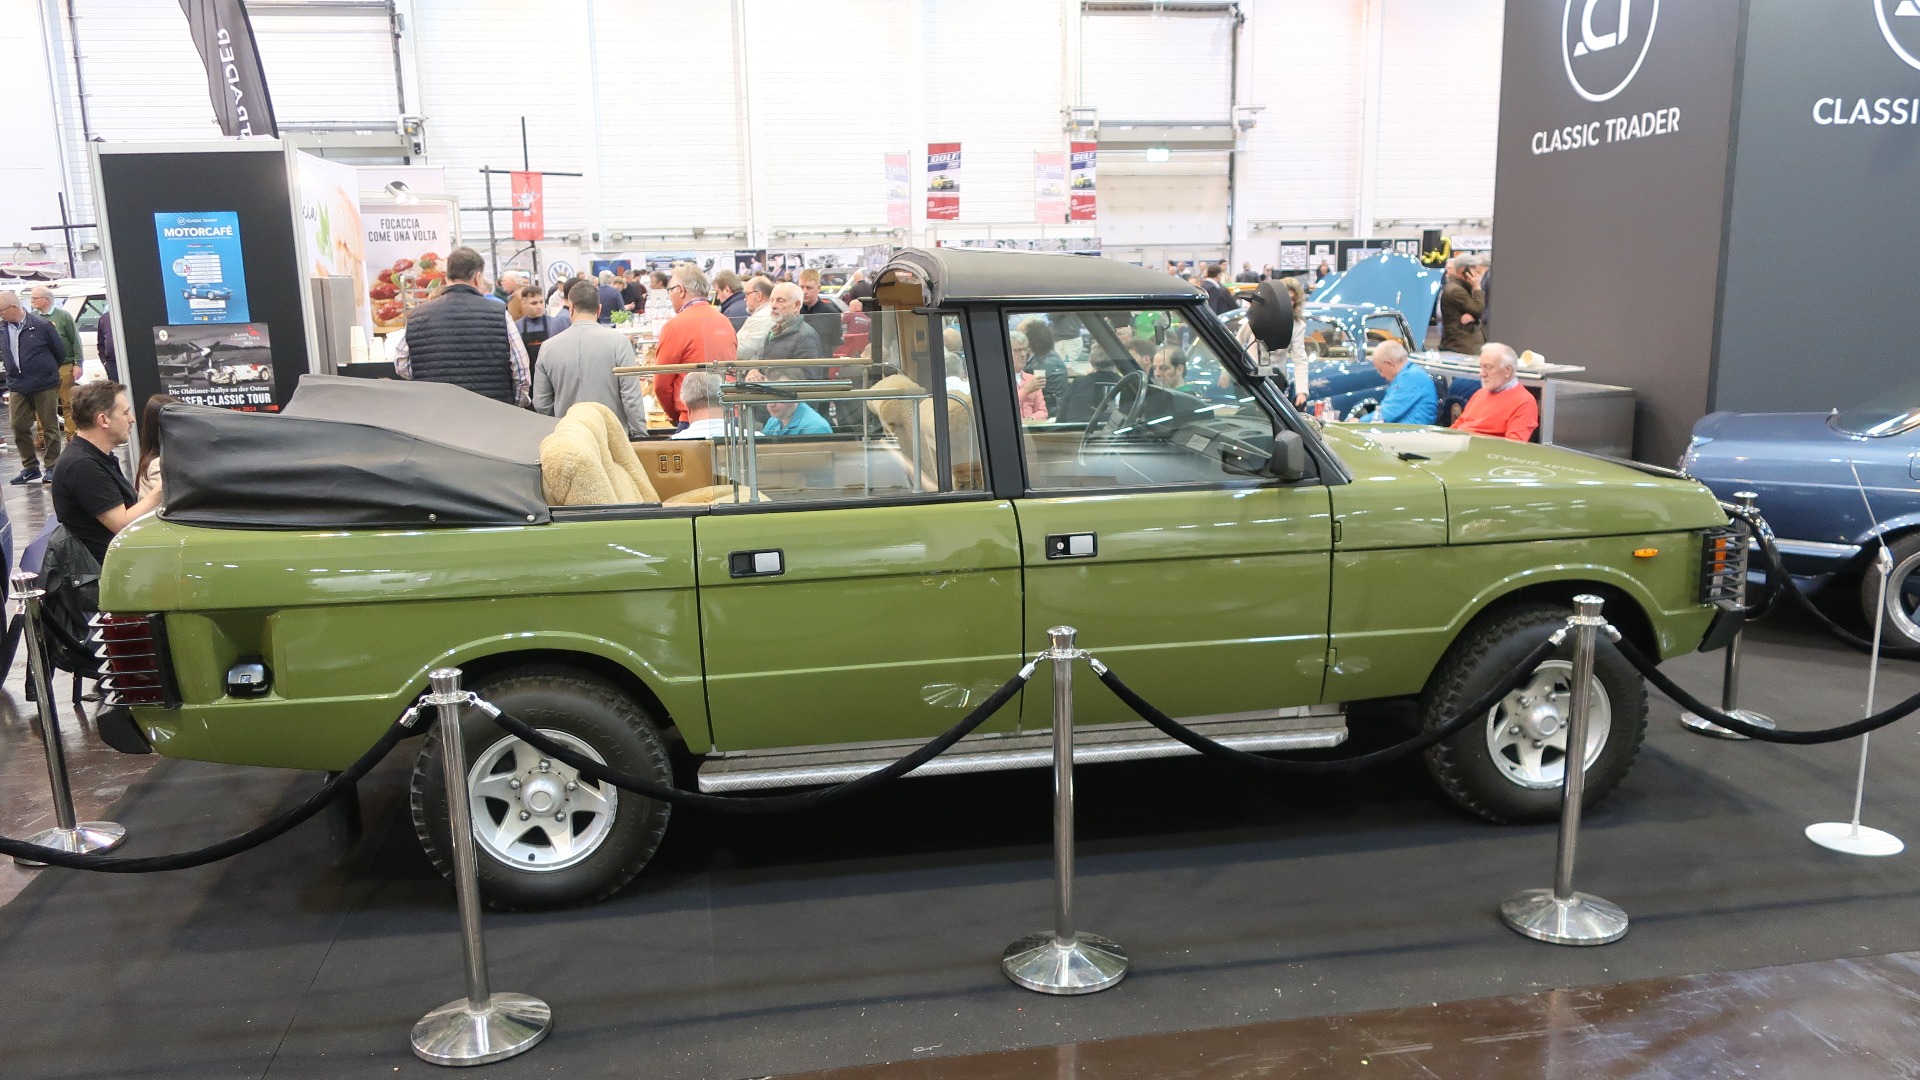 Gedigen 1985 Range Rover ombygd til jaktbil av Rometsch for kommunistpamper.